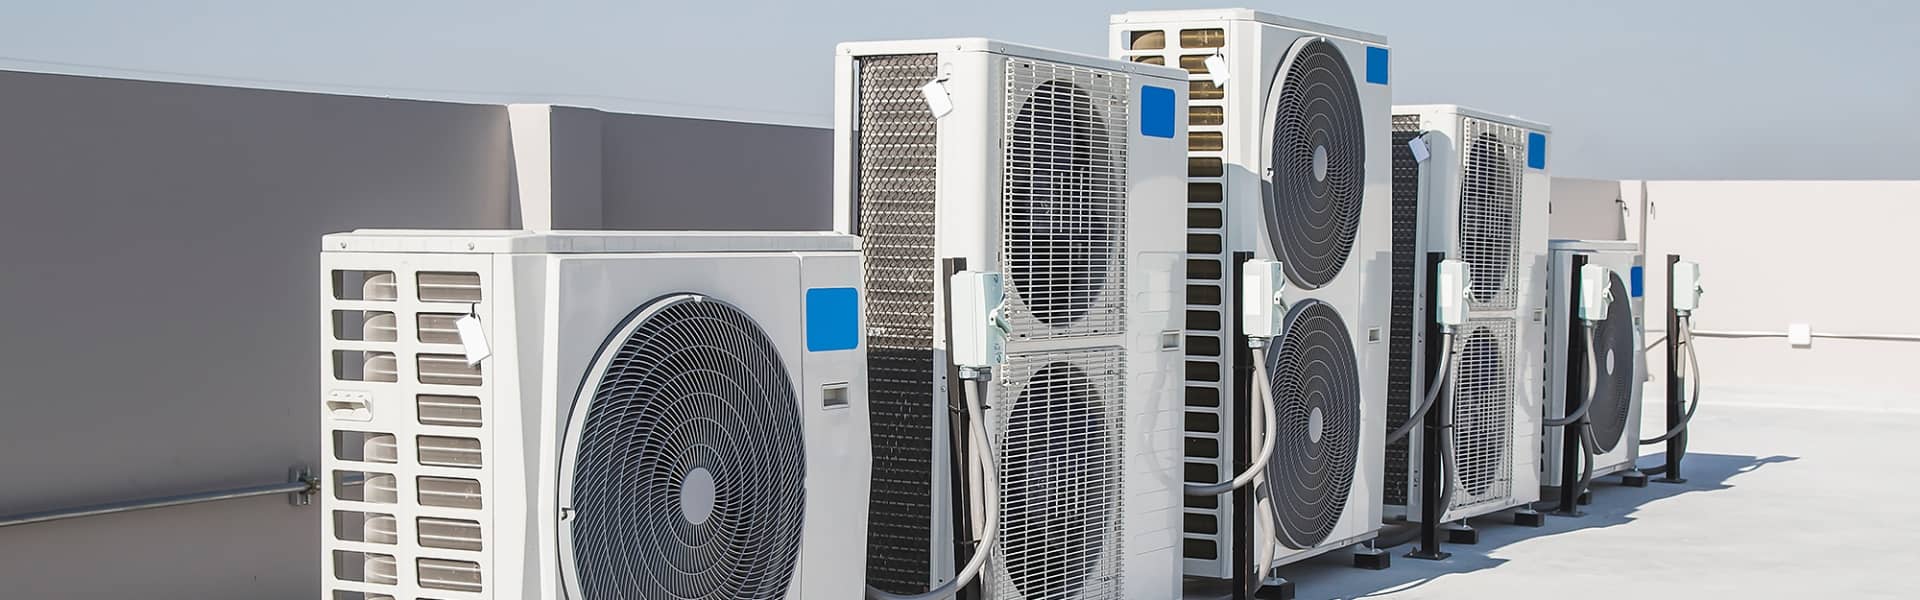 Série d'unités de climatisation commercial sur un toit d'immeuble